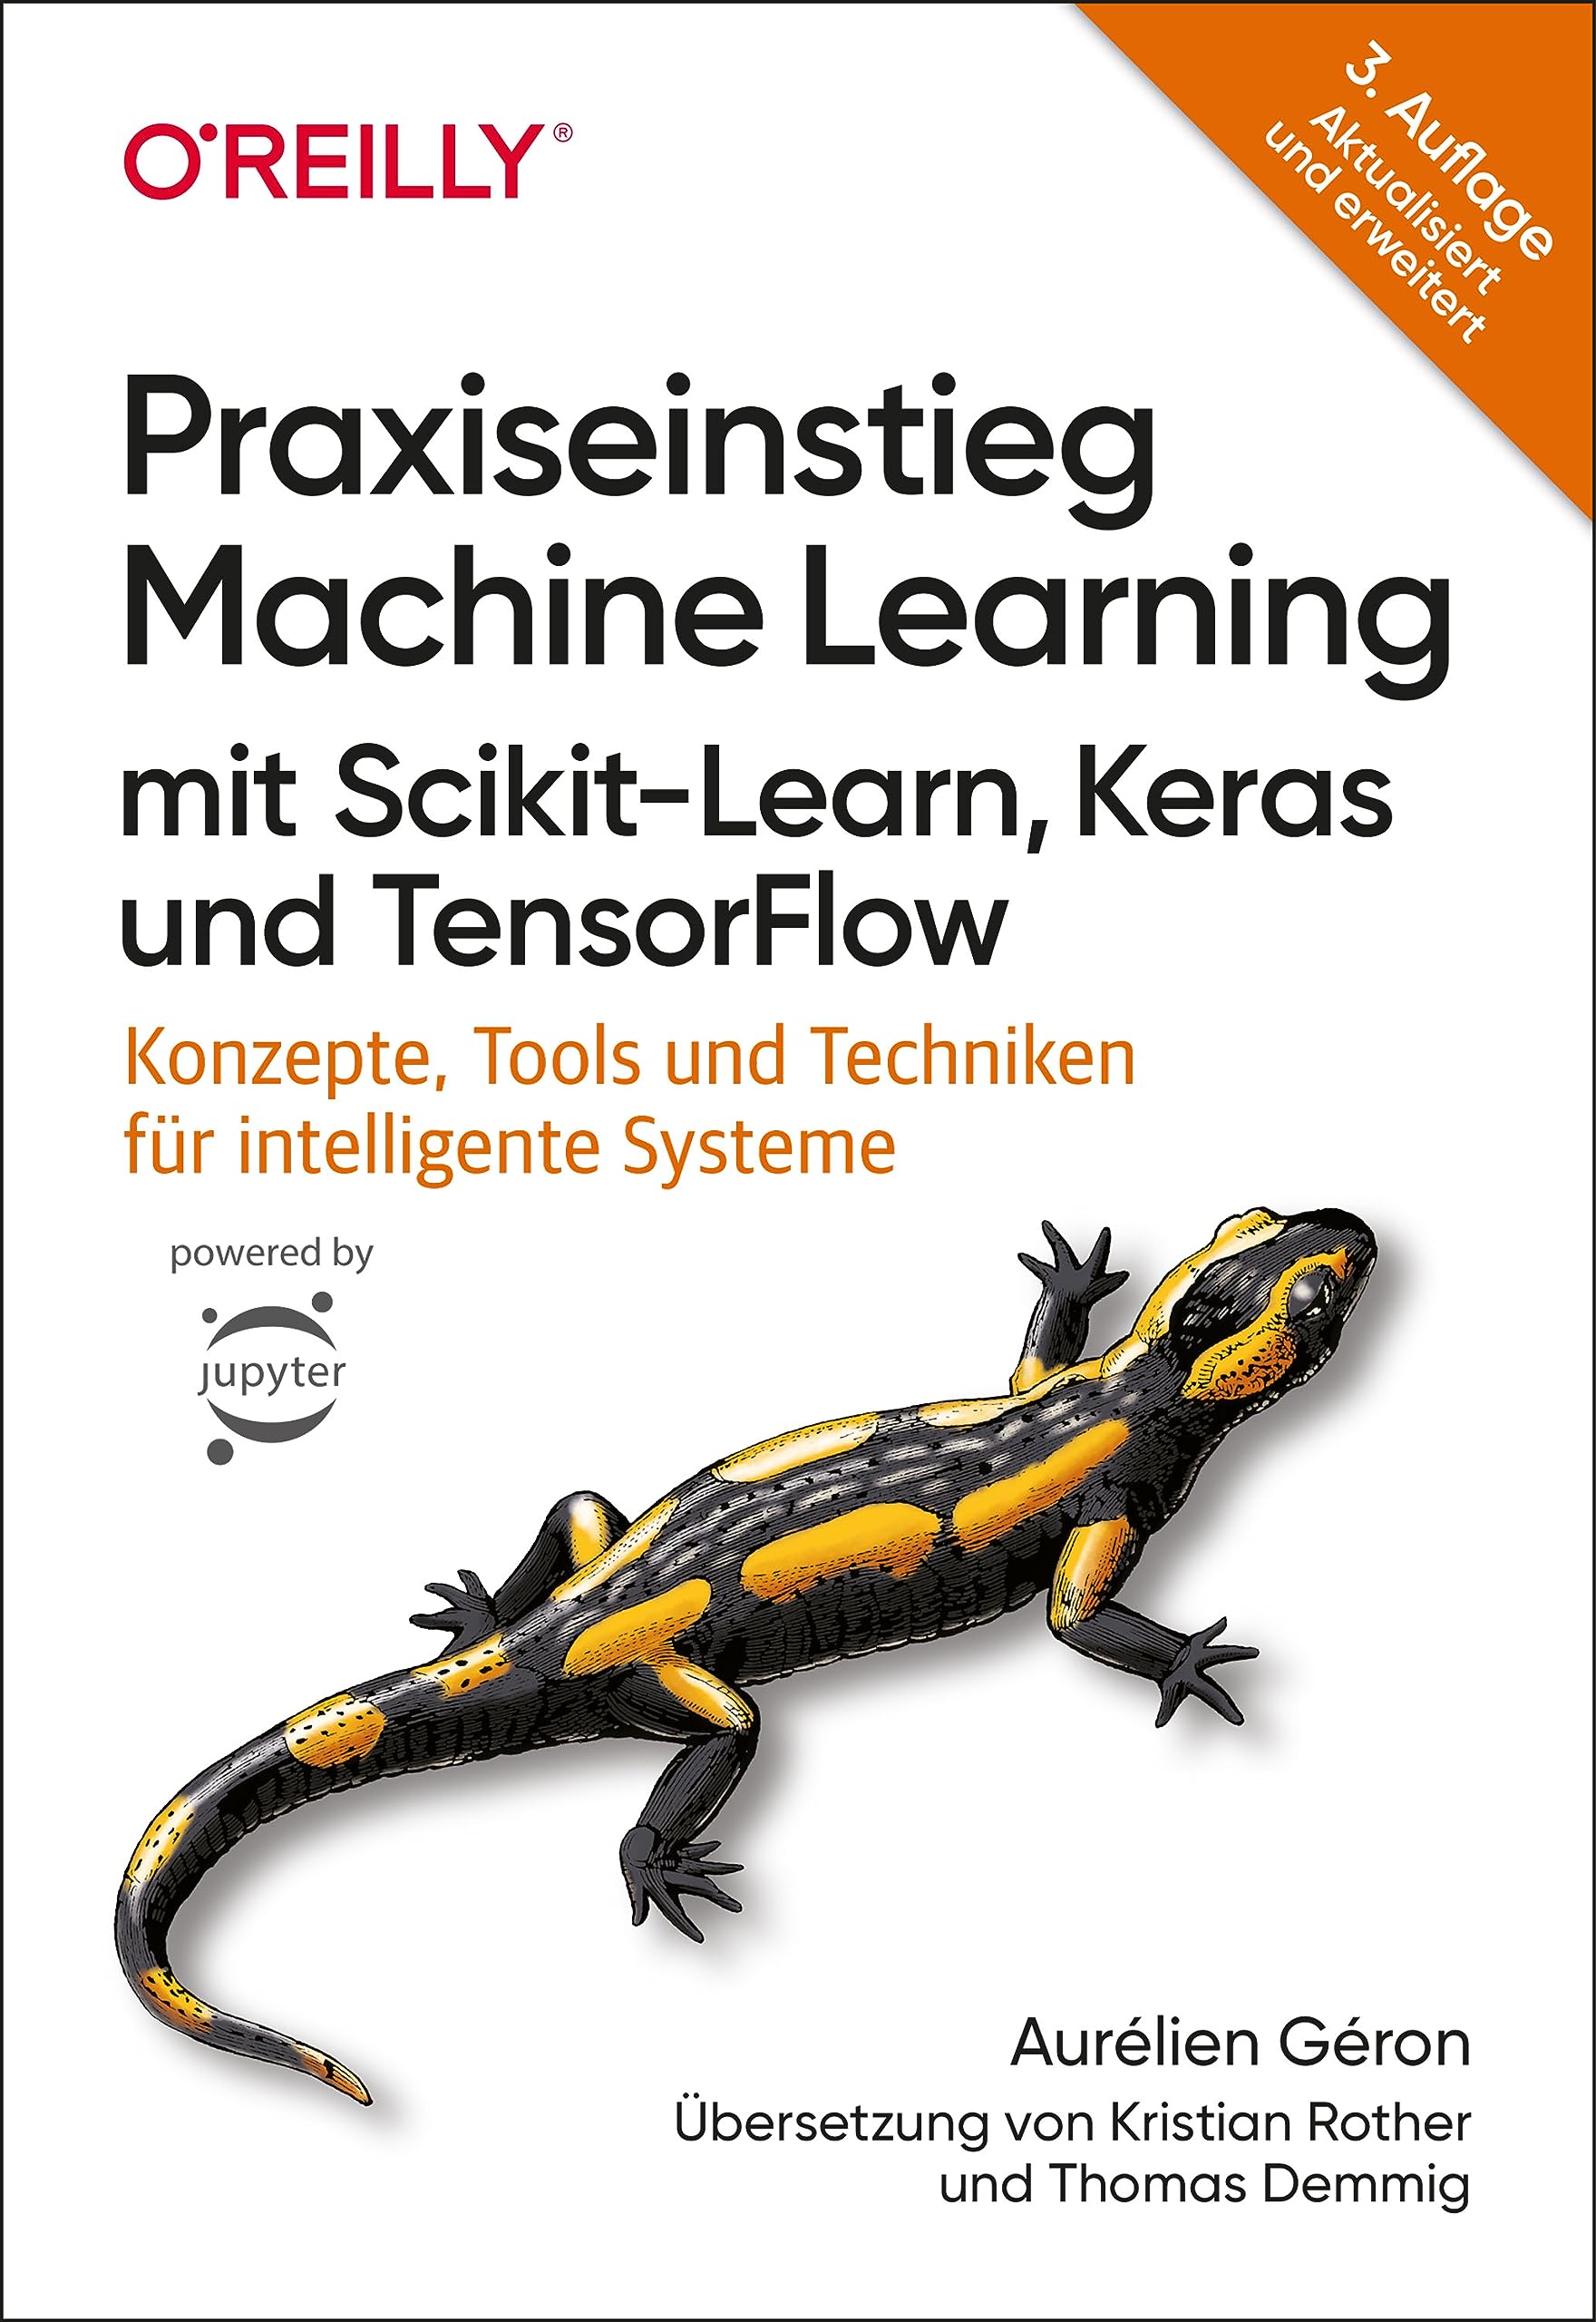 Praxiseinstieg Machine Learning mit Scikit-Learn, Keras und TensorFlow: Konzepte, Tools und Techniken für intelligente Systeme (German Edition)